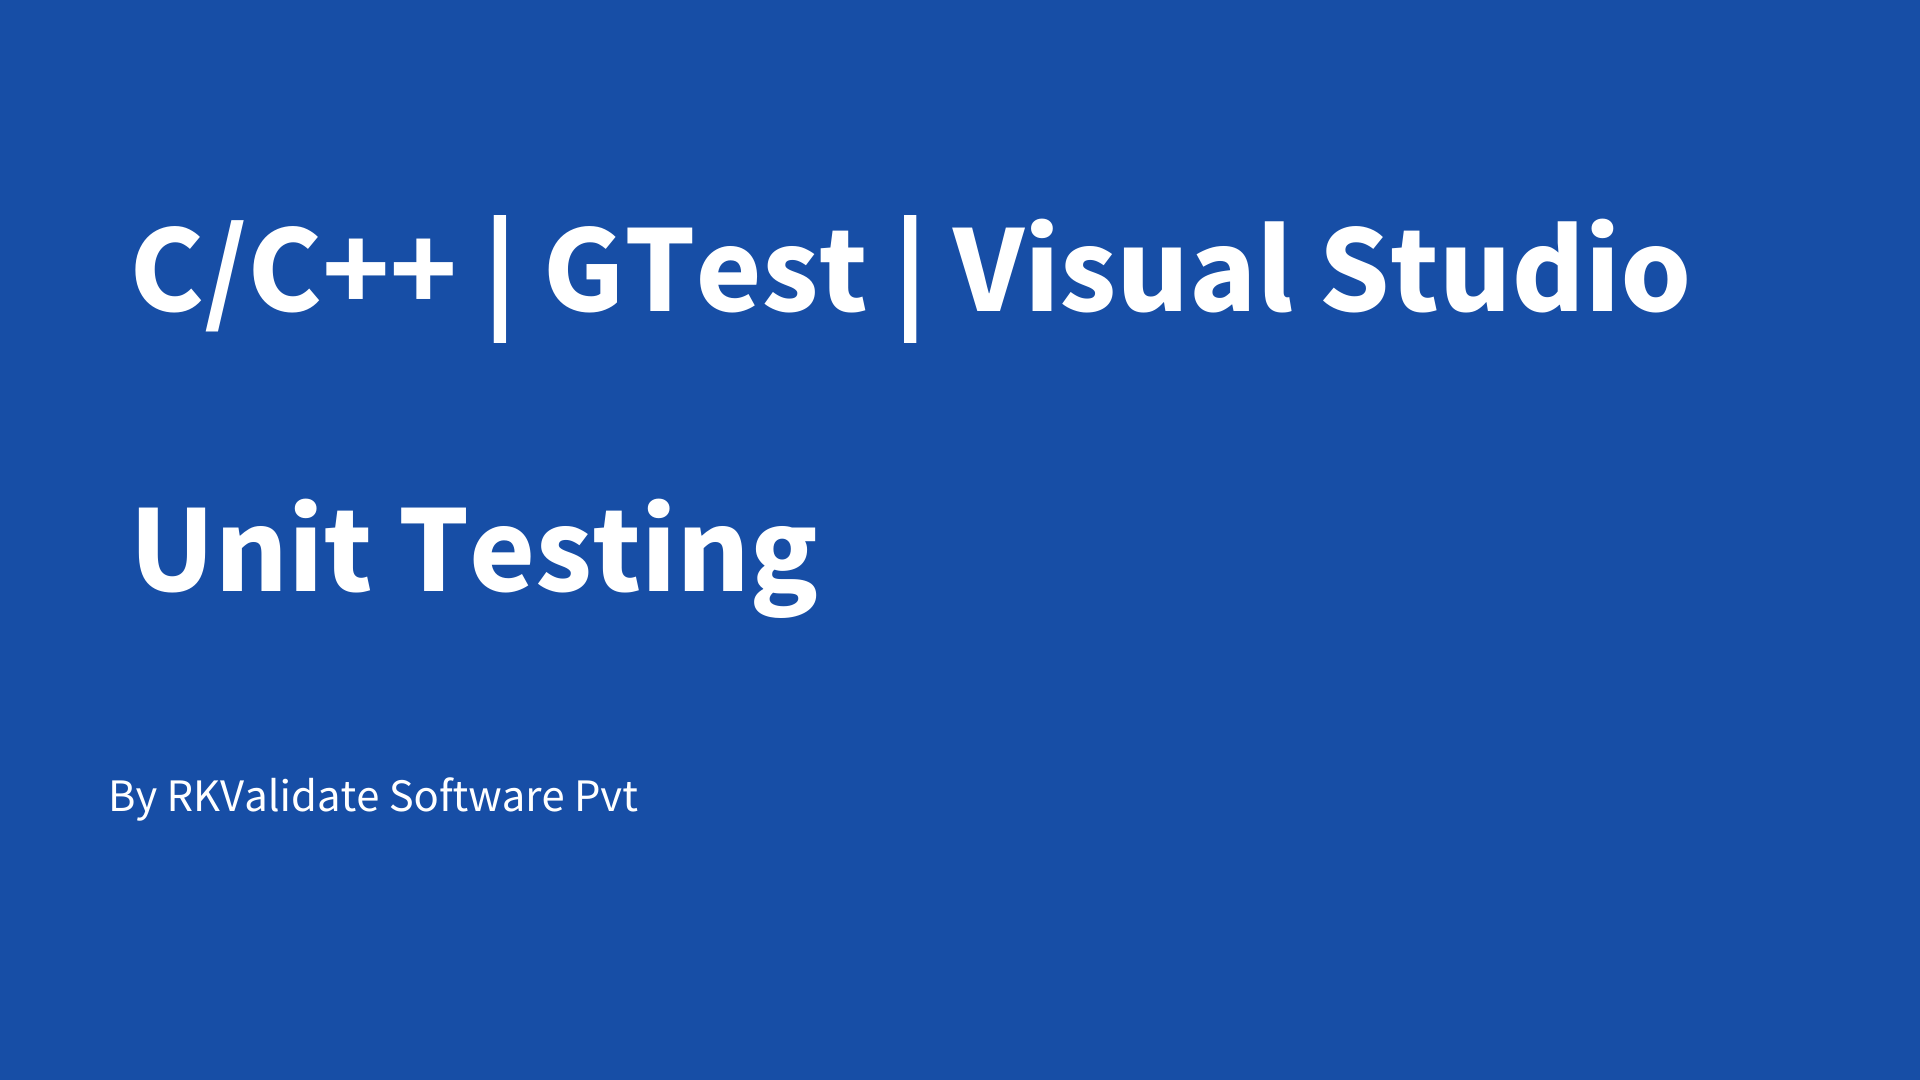 C and C++ GTest Visual studio